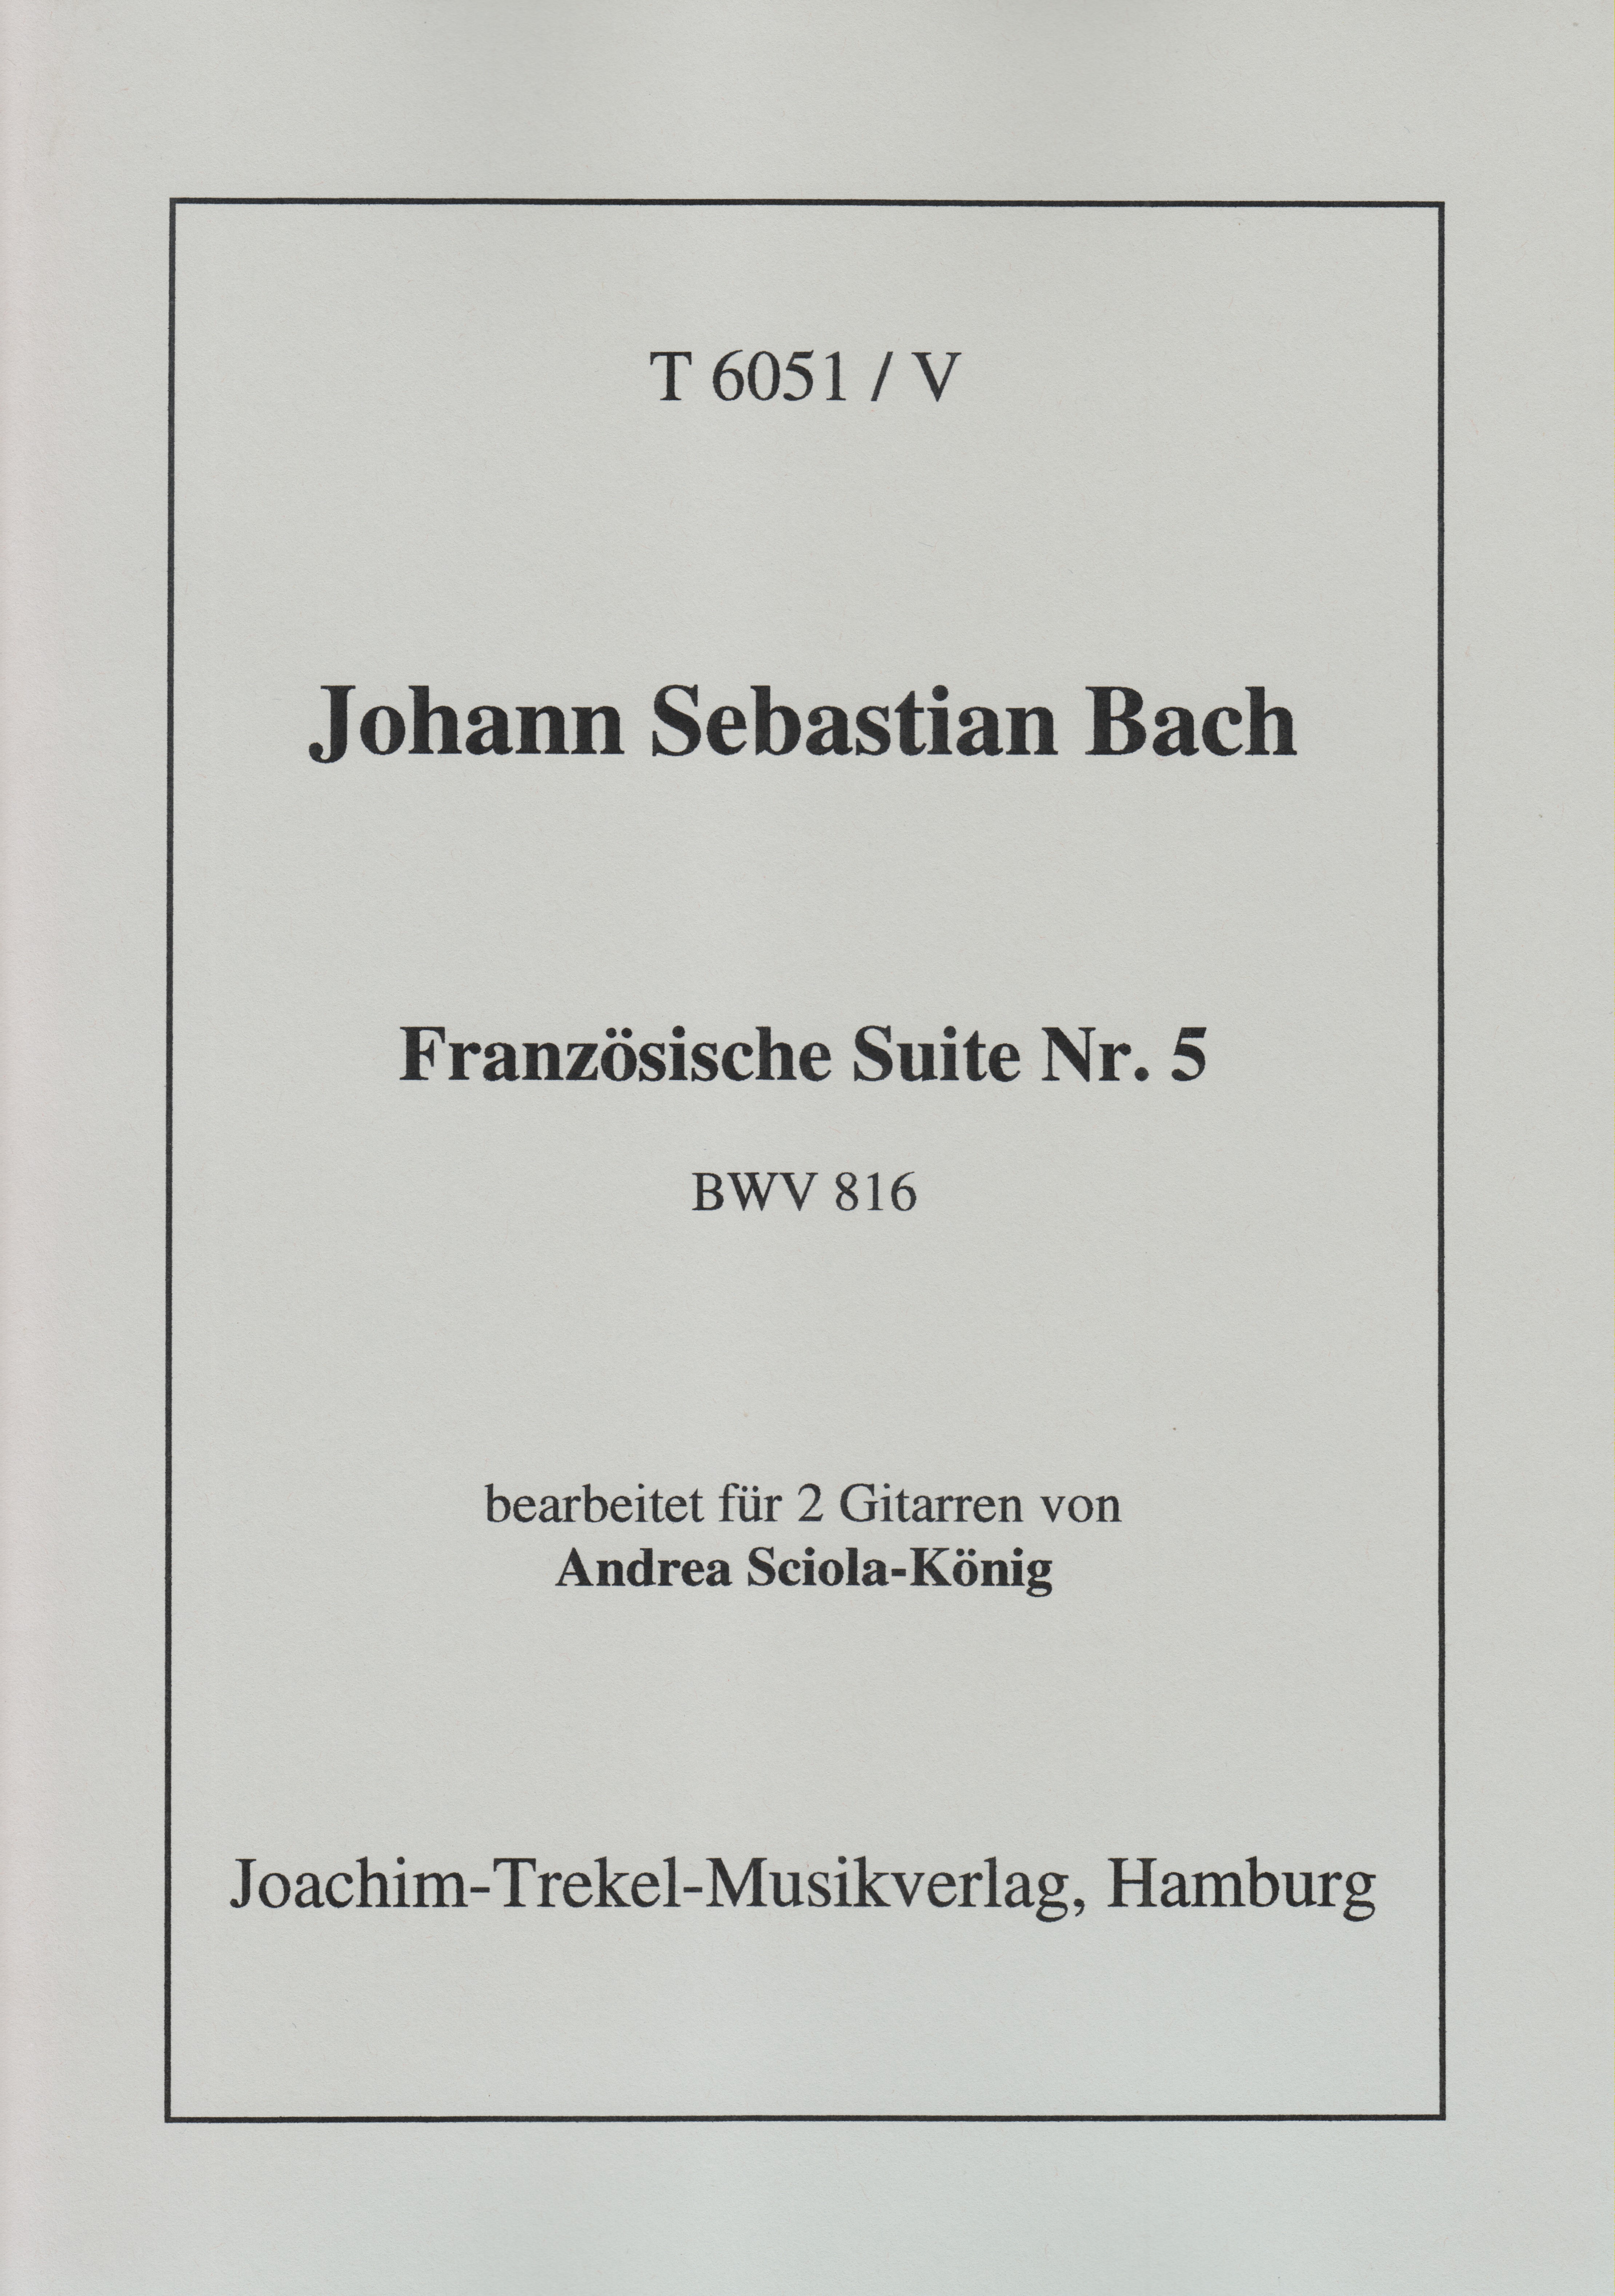 Französische Suite Nr. 5 BWV 816